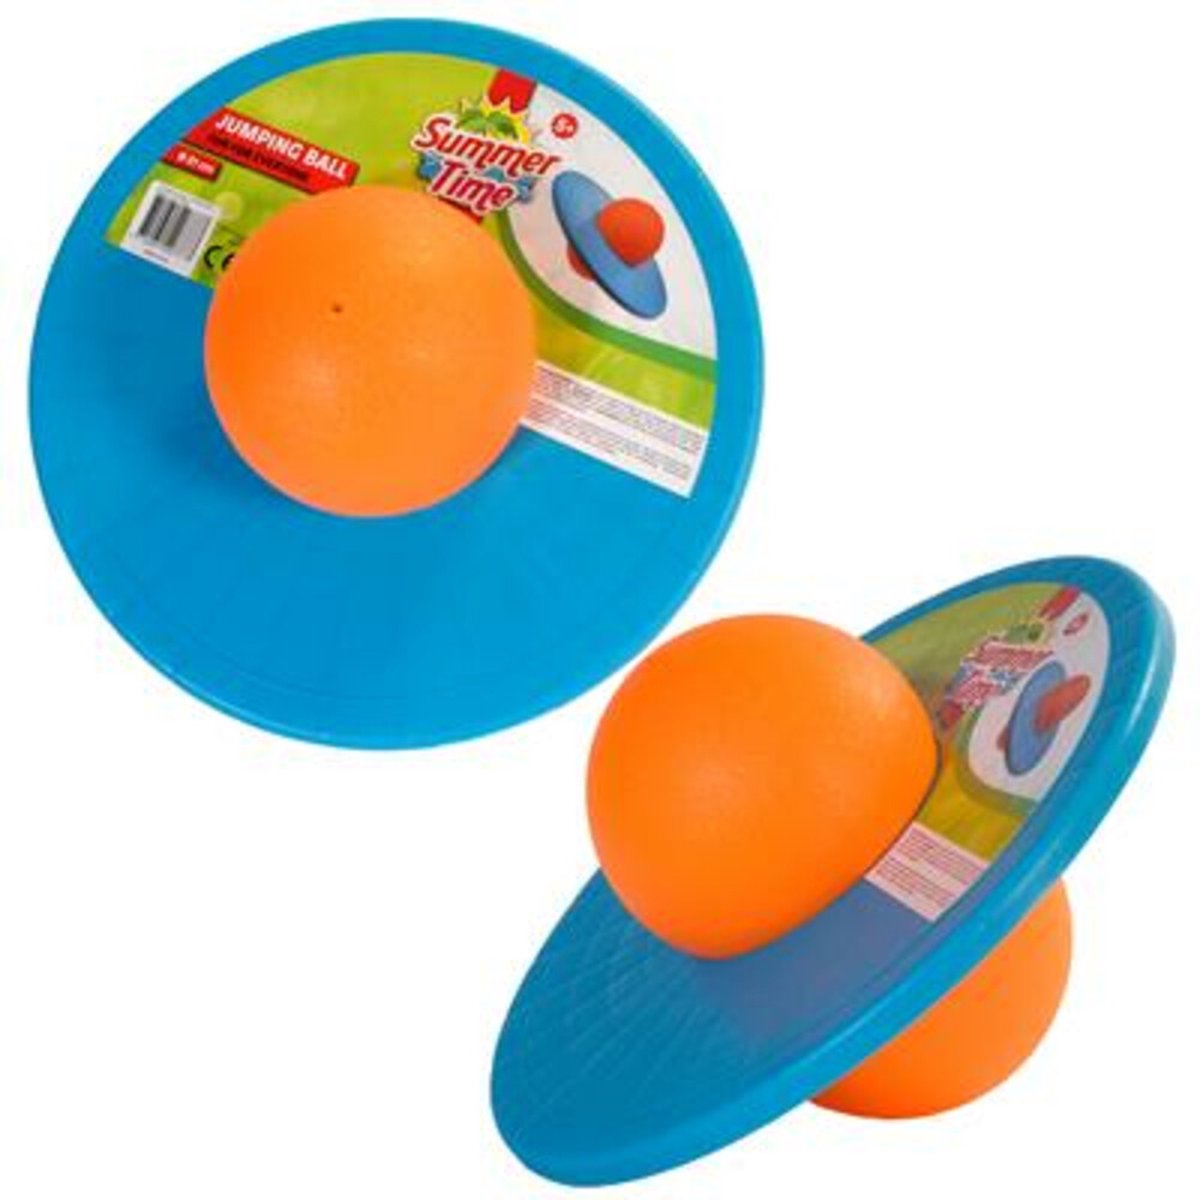 Jumping board - Ballon sauteur 45 cm jouet enfant sportif pour jardin